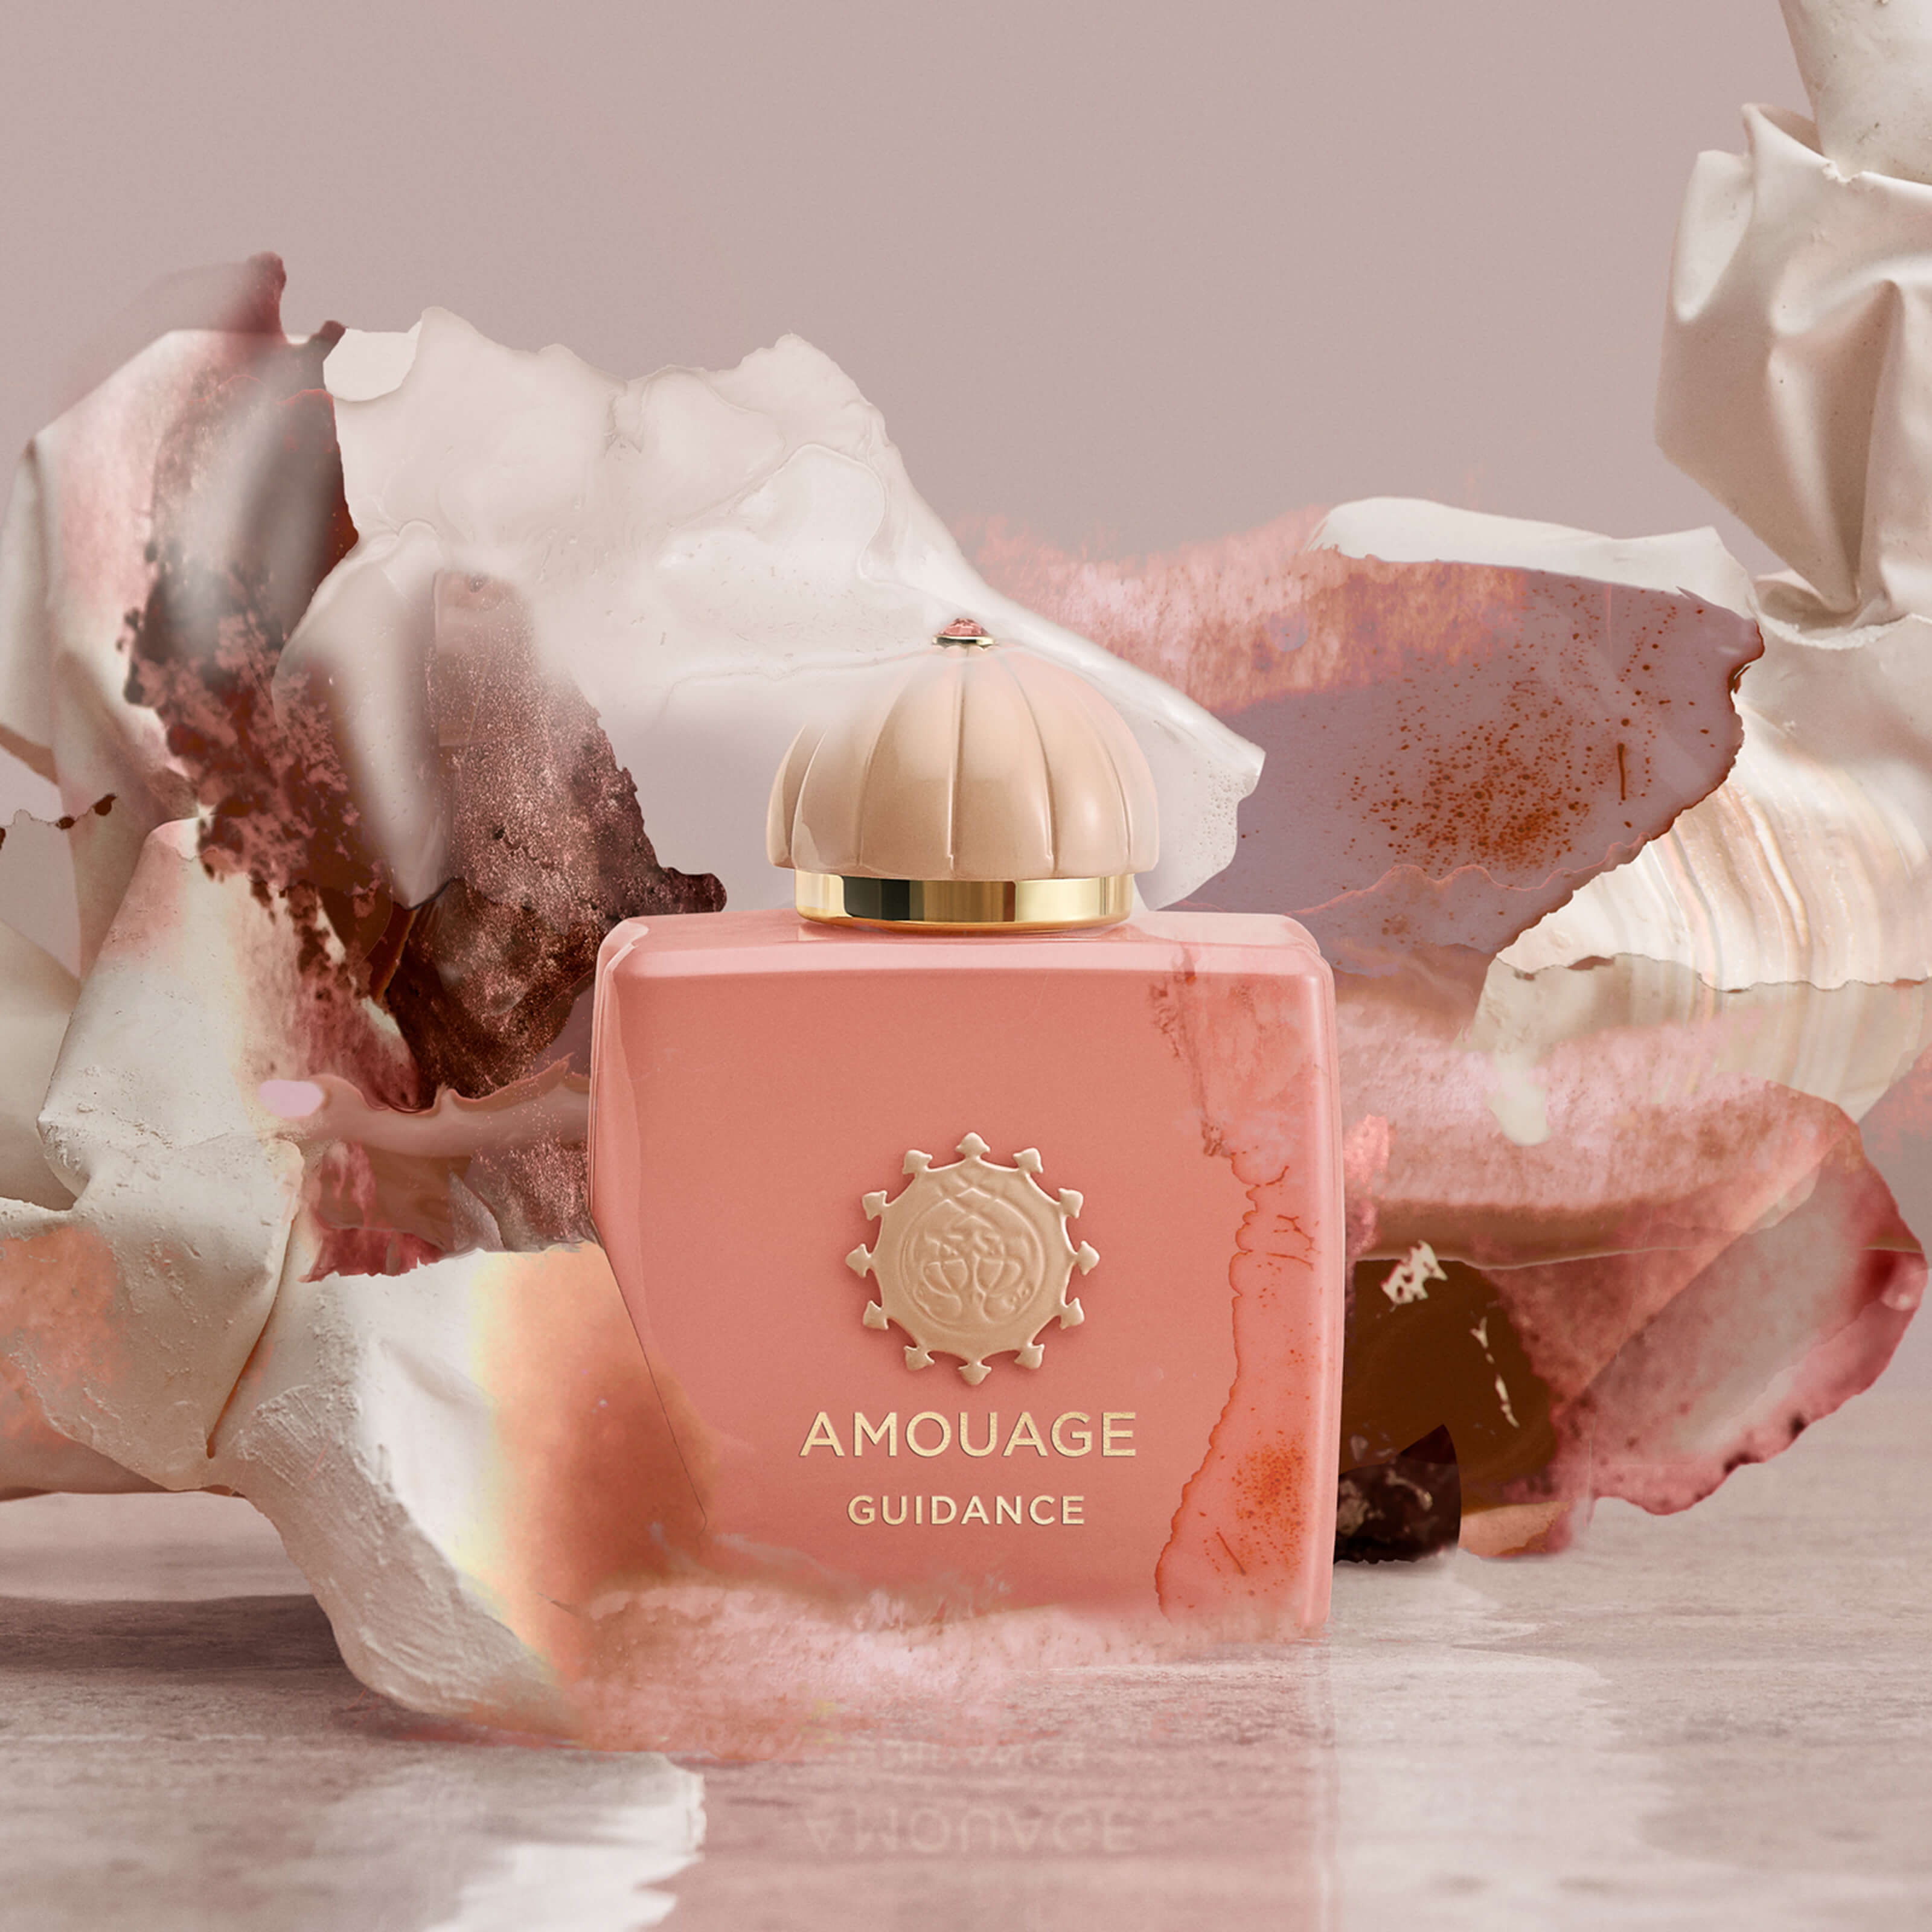 Amouage Guidance Eau de Parfum – Luxe Perfumery